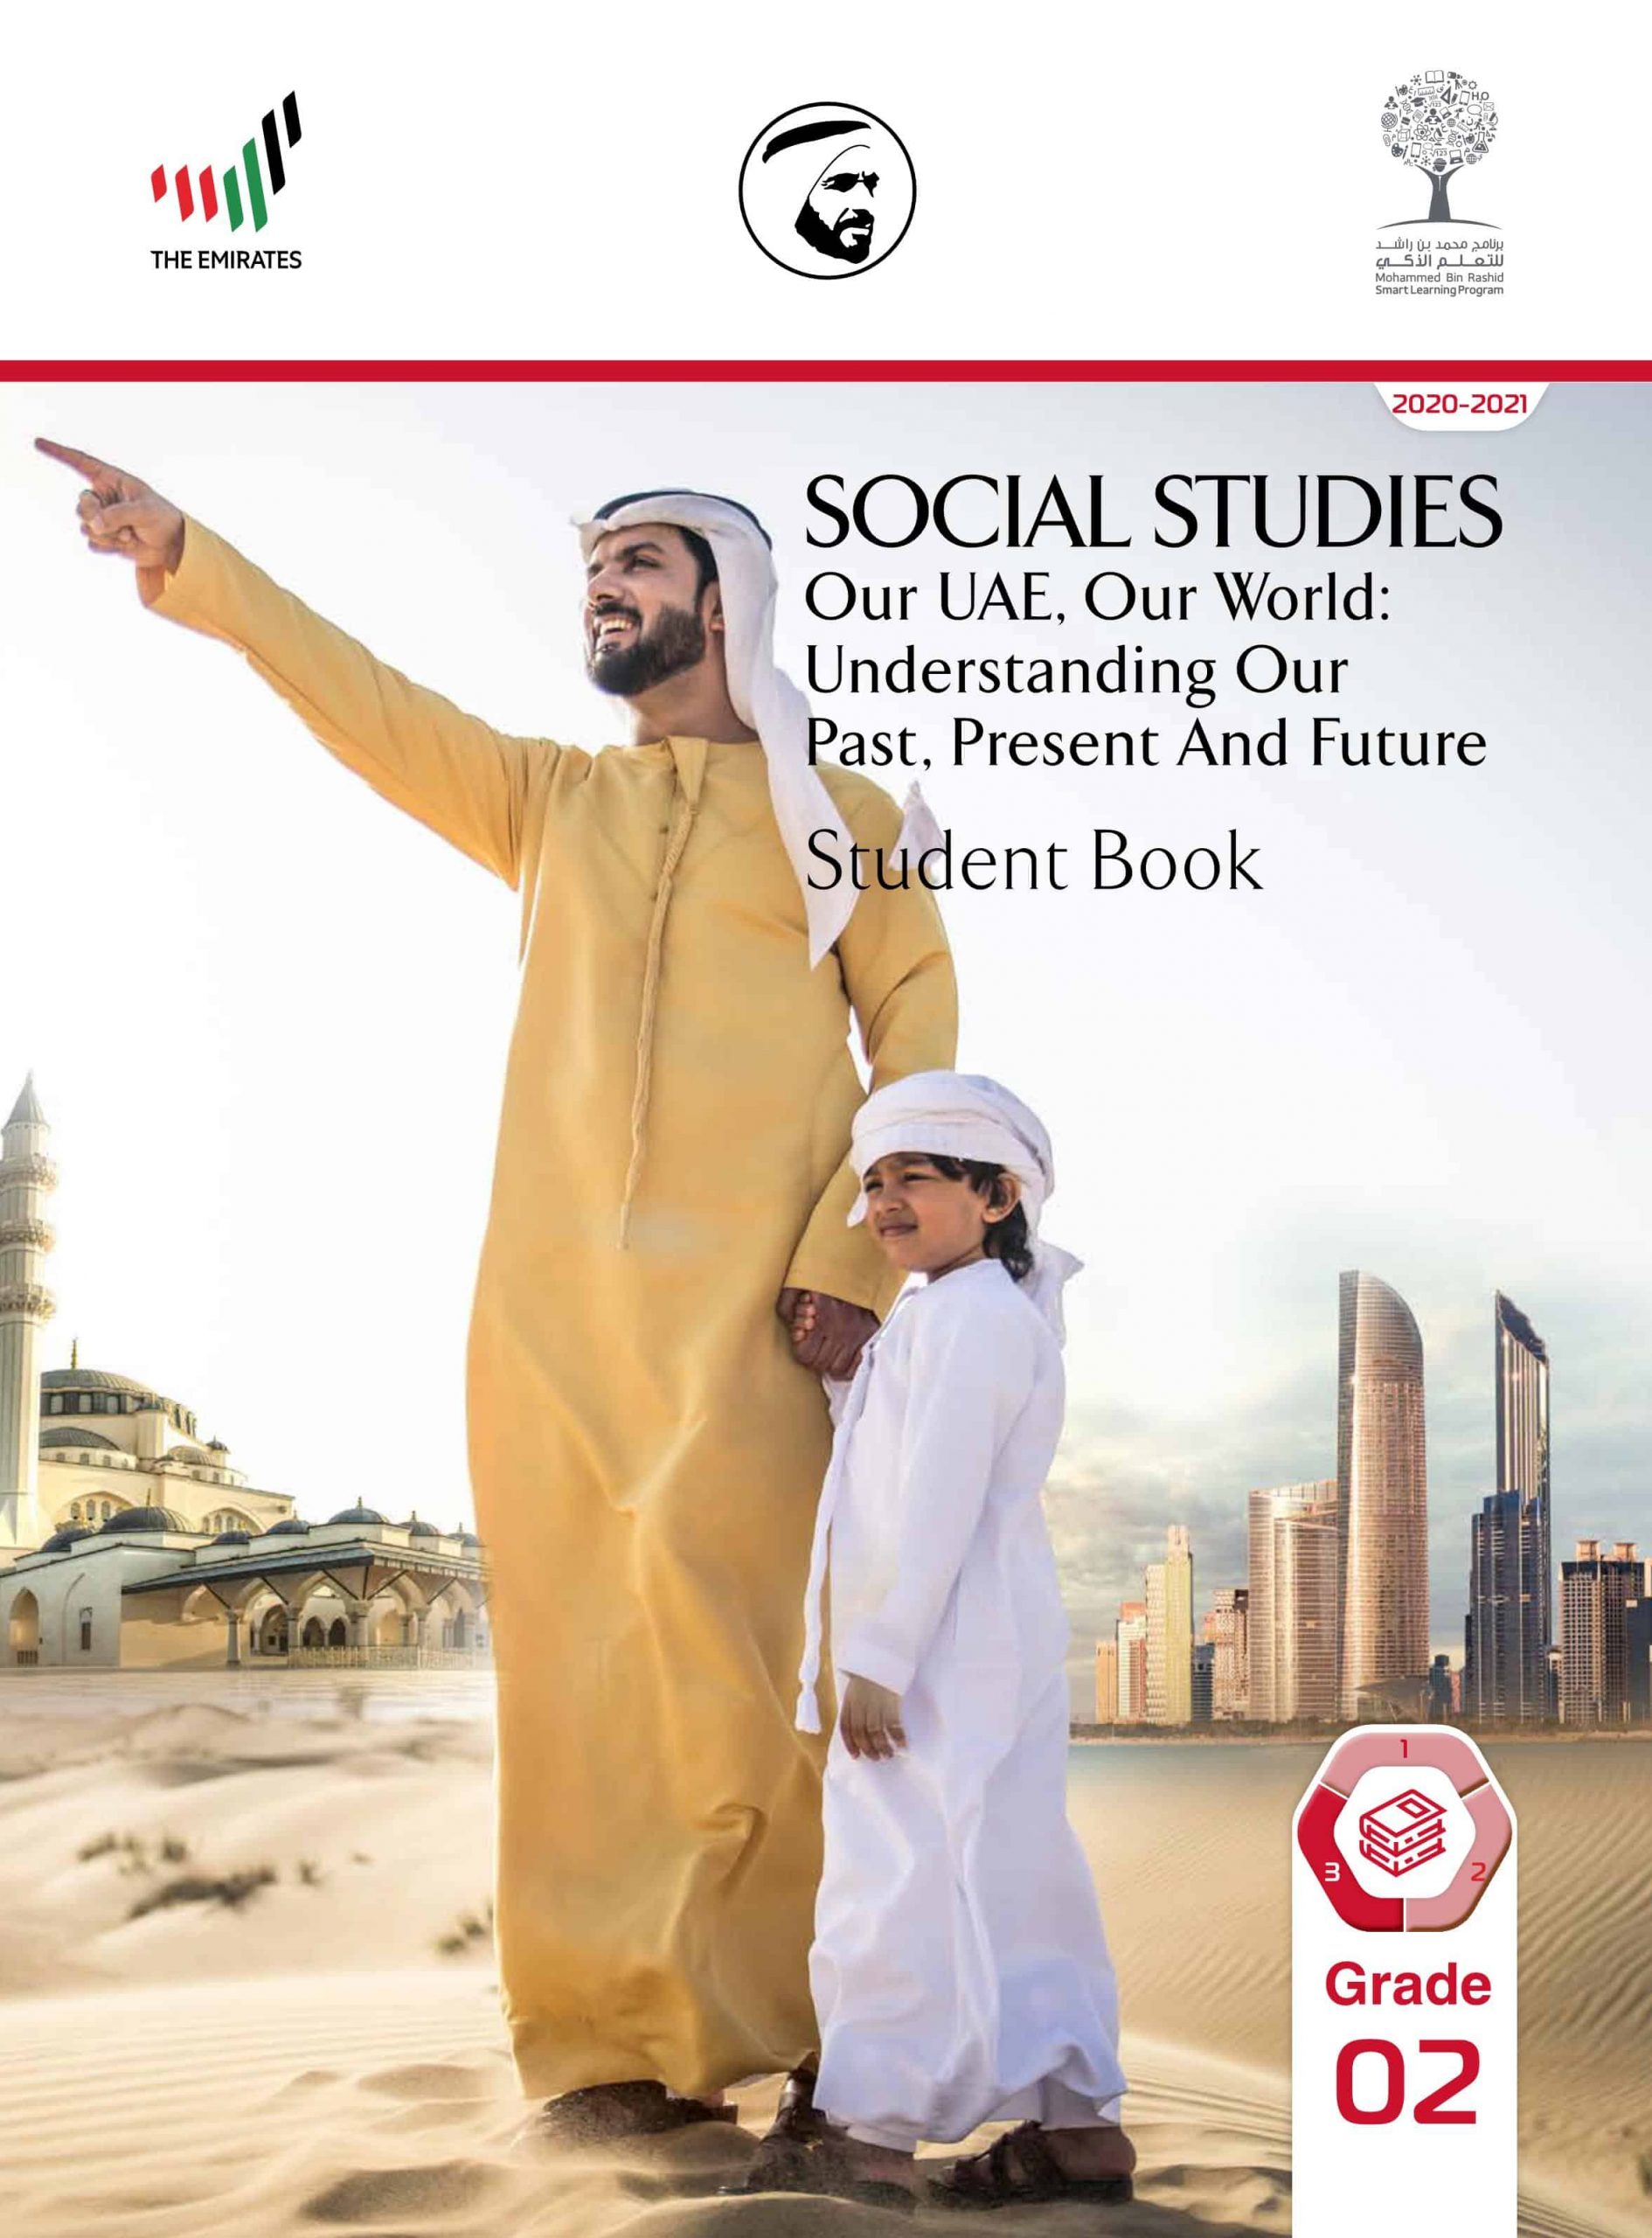 كتاب الطالب بالإنجليزي الفصل الدراسي الثالث 2020-2021 الصف الثاني مادة الدراسات الإجتماعية والتربية الوطنية 